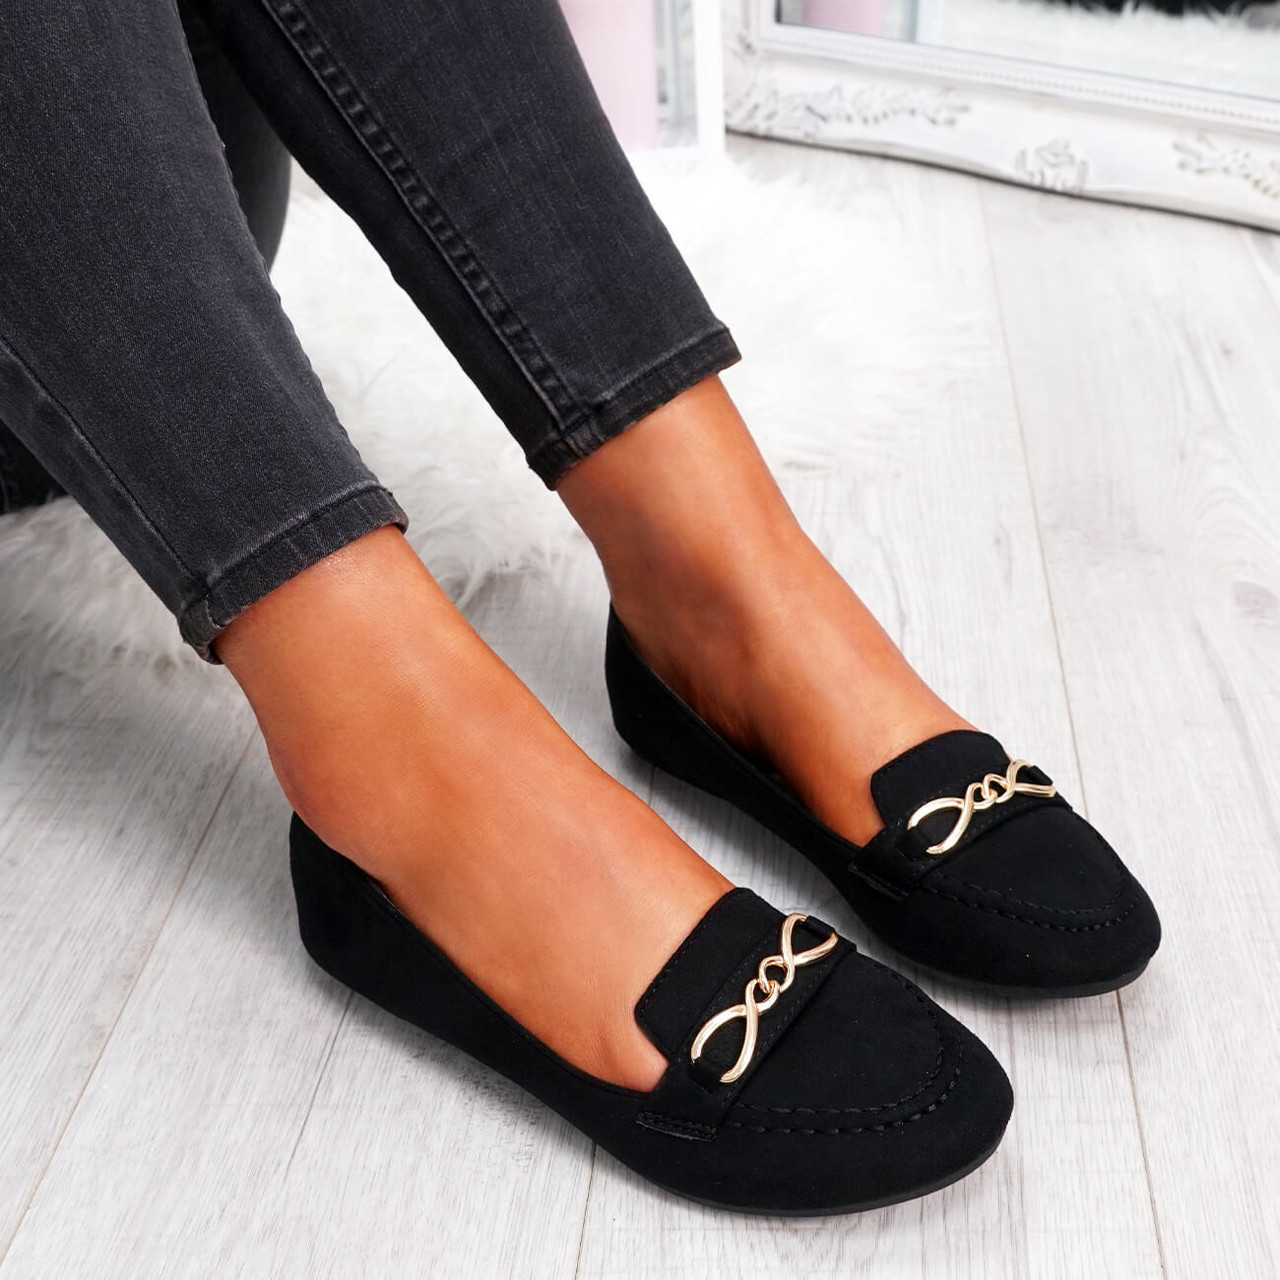 black flat shoes womens uk